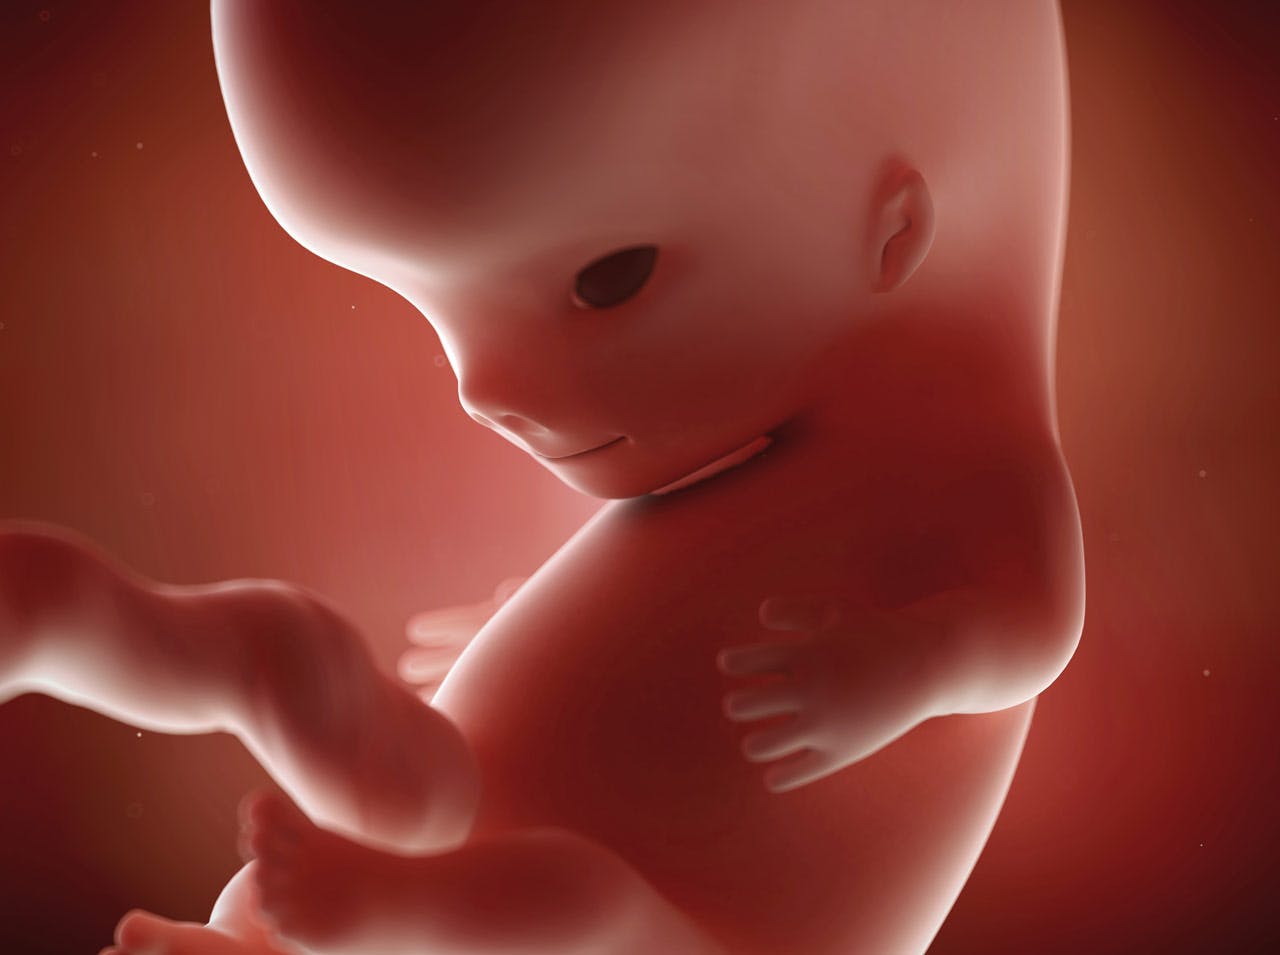 Foetus Bebe In Utero Developpement Des Sens De L Ouie Et La Vue Parents Fr